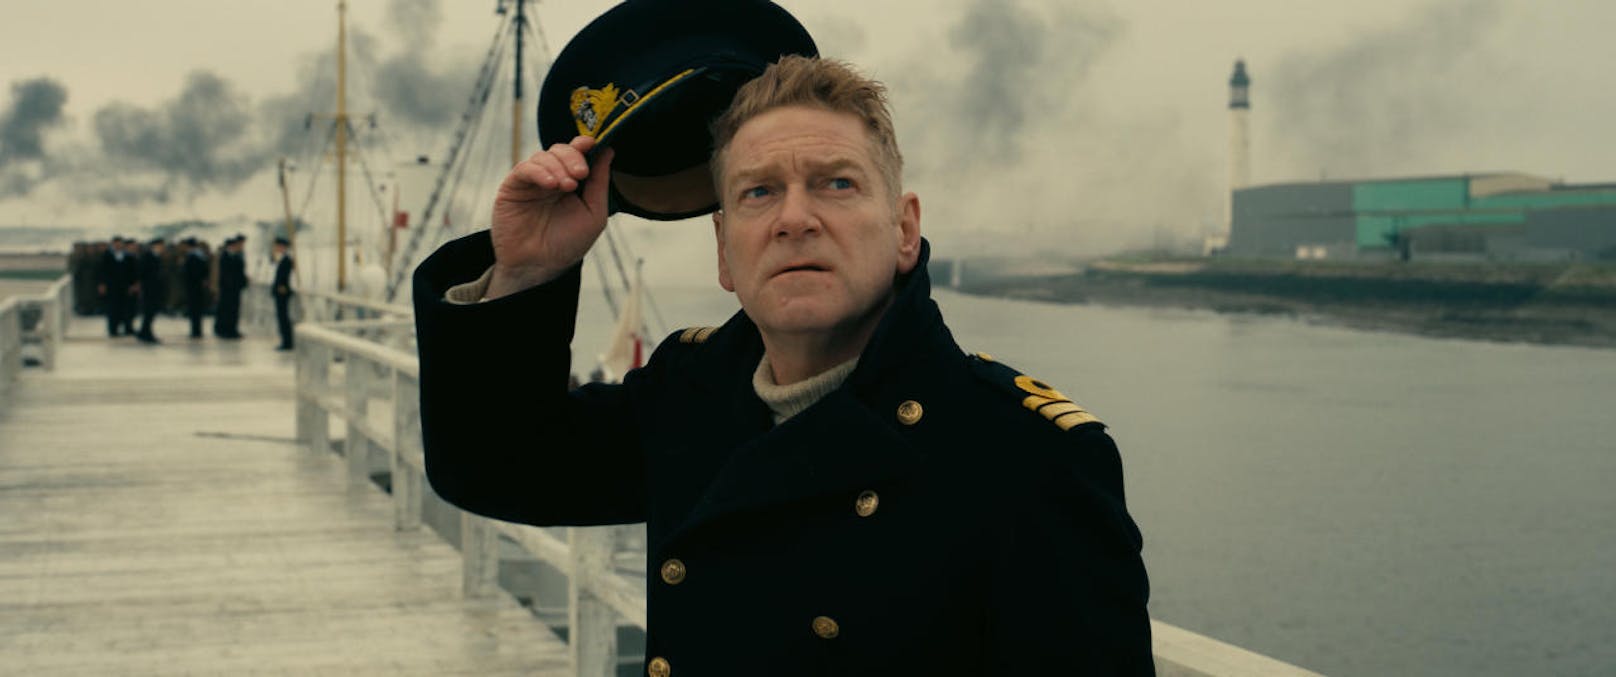 Kenneth Branagh in "Dunkirk"